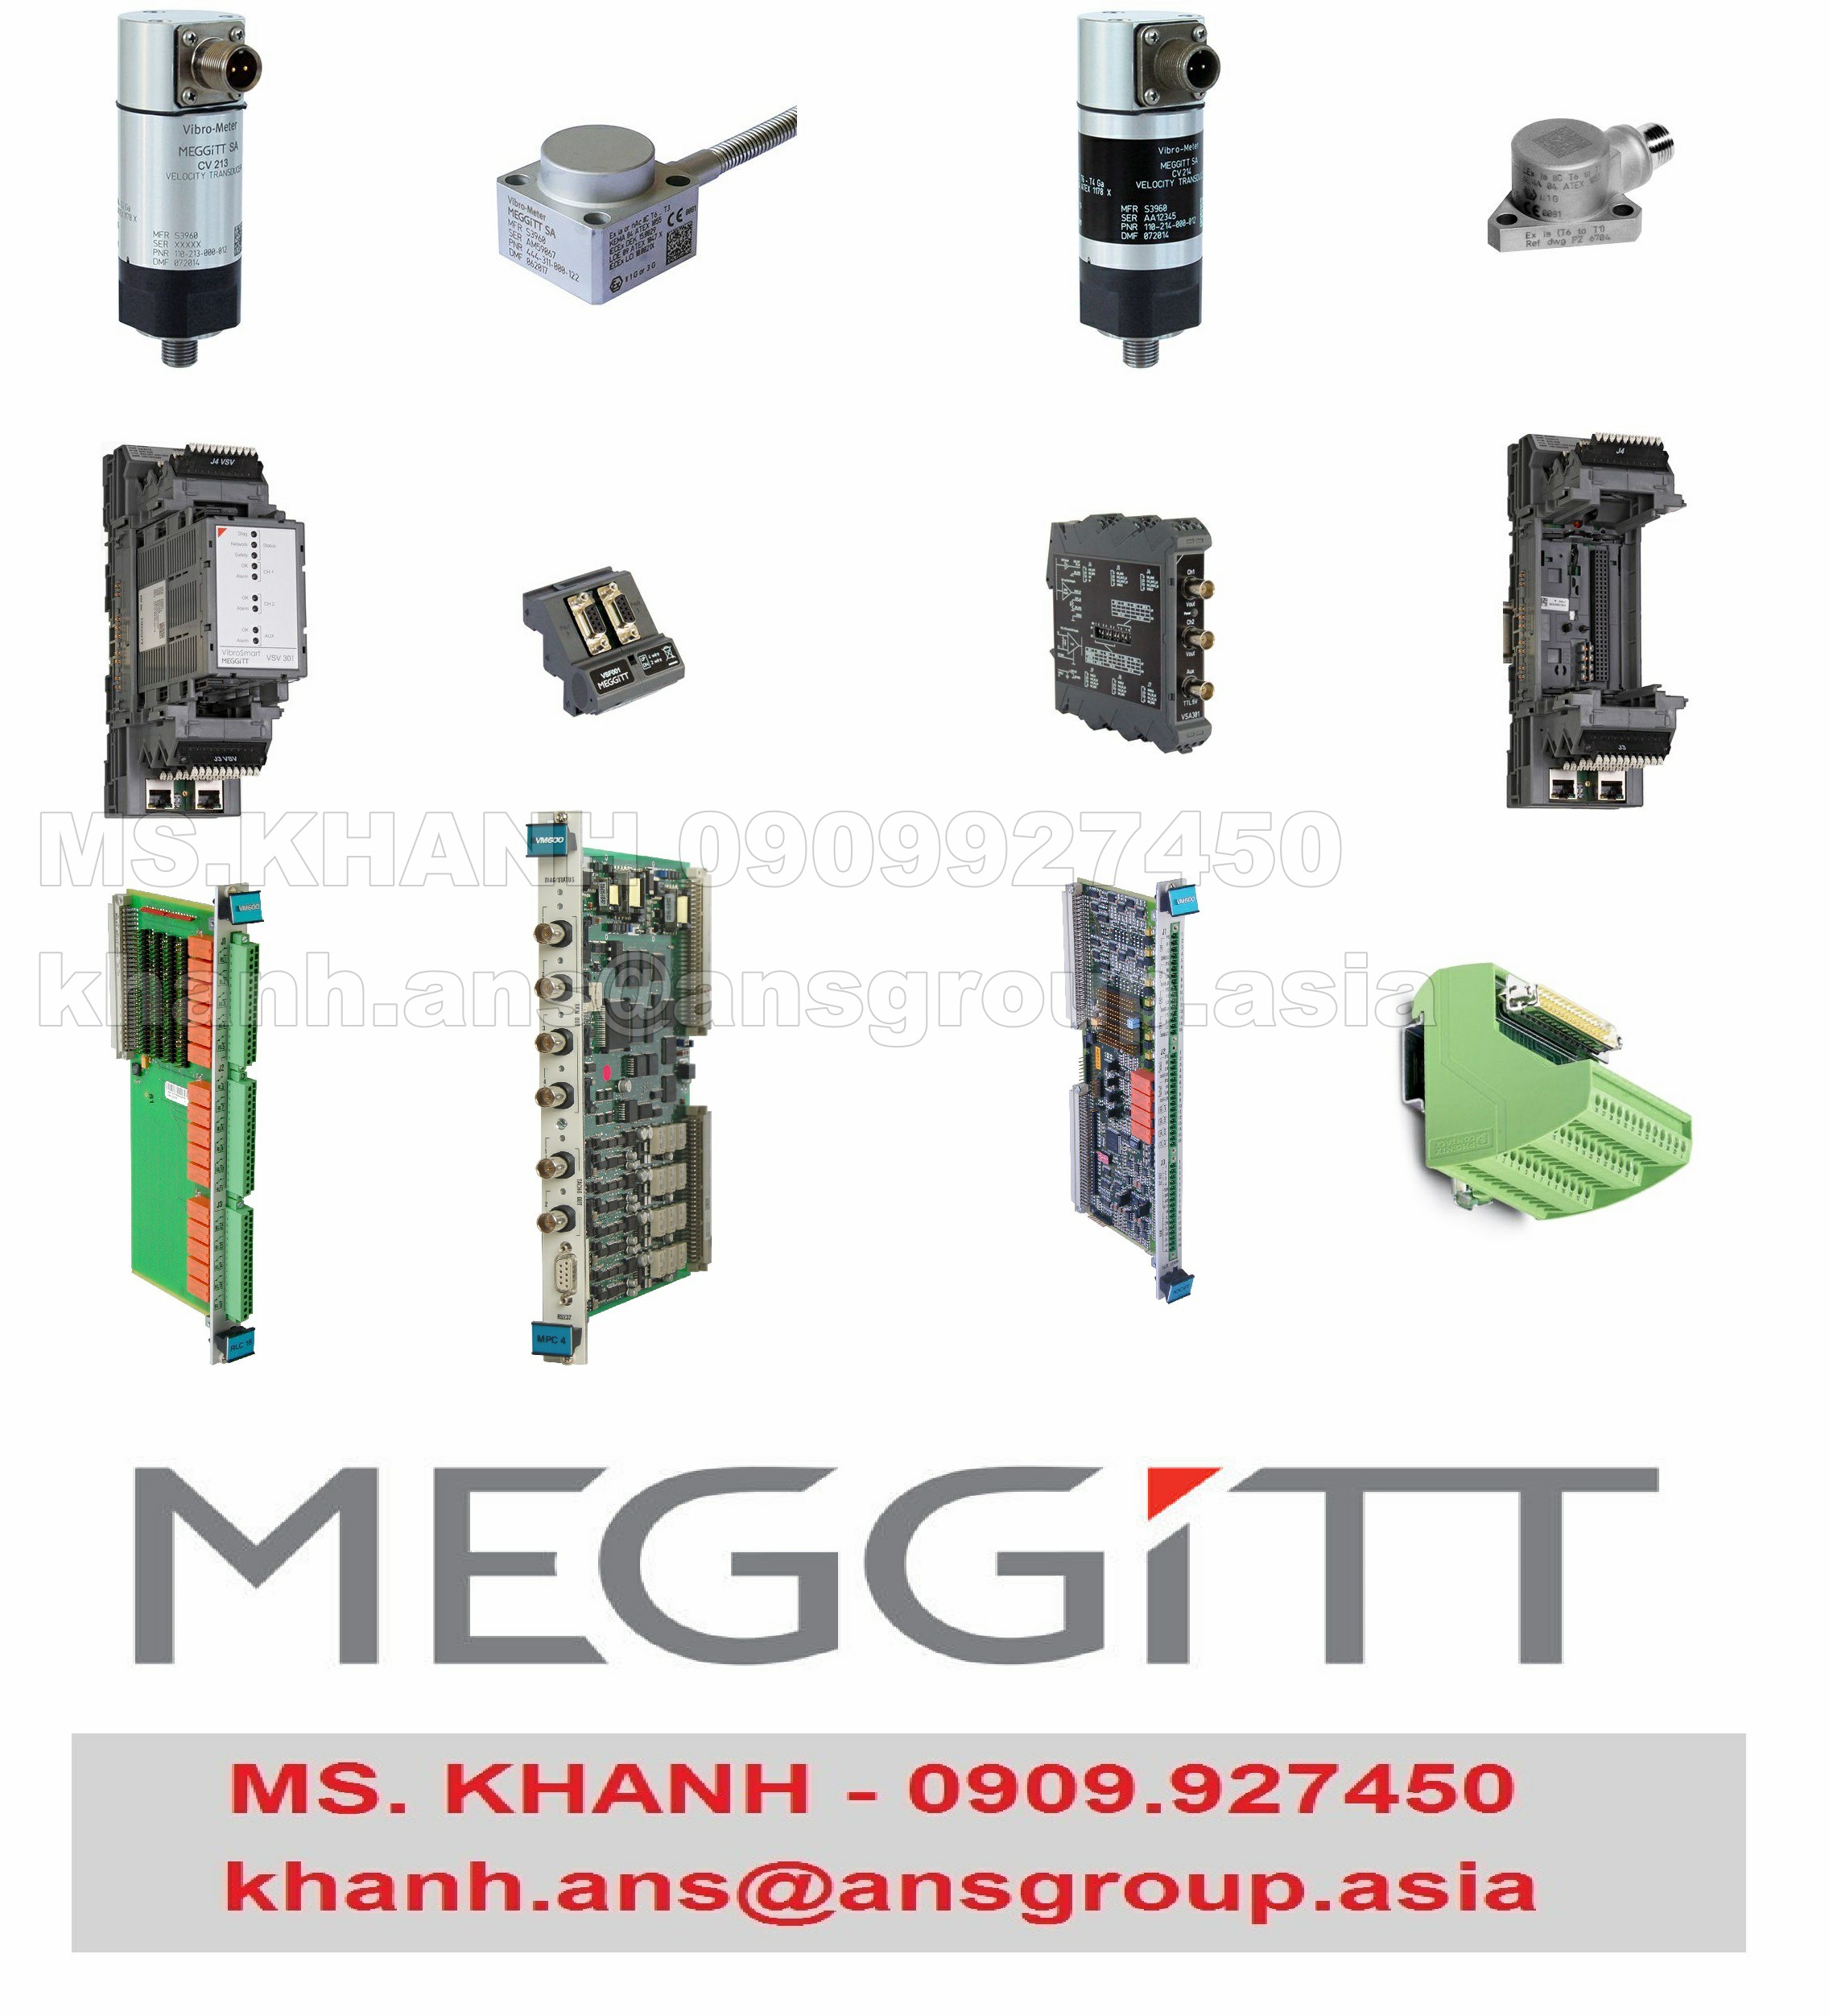 thiet-bi-200-560-000-1hh-input-output-card-for-mpc4-meggitt-vietnam-1.png